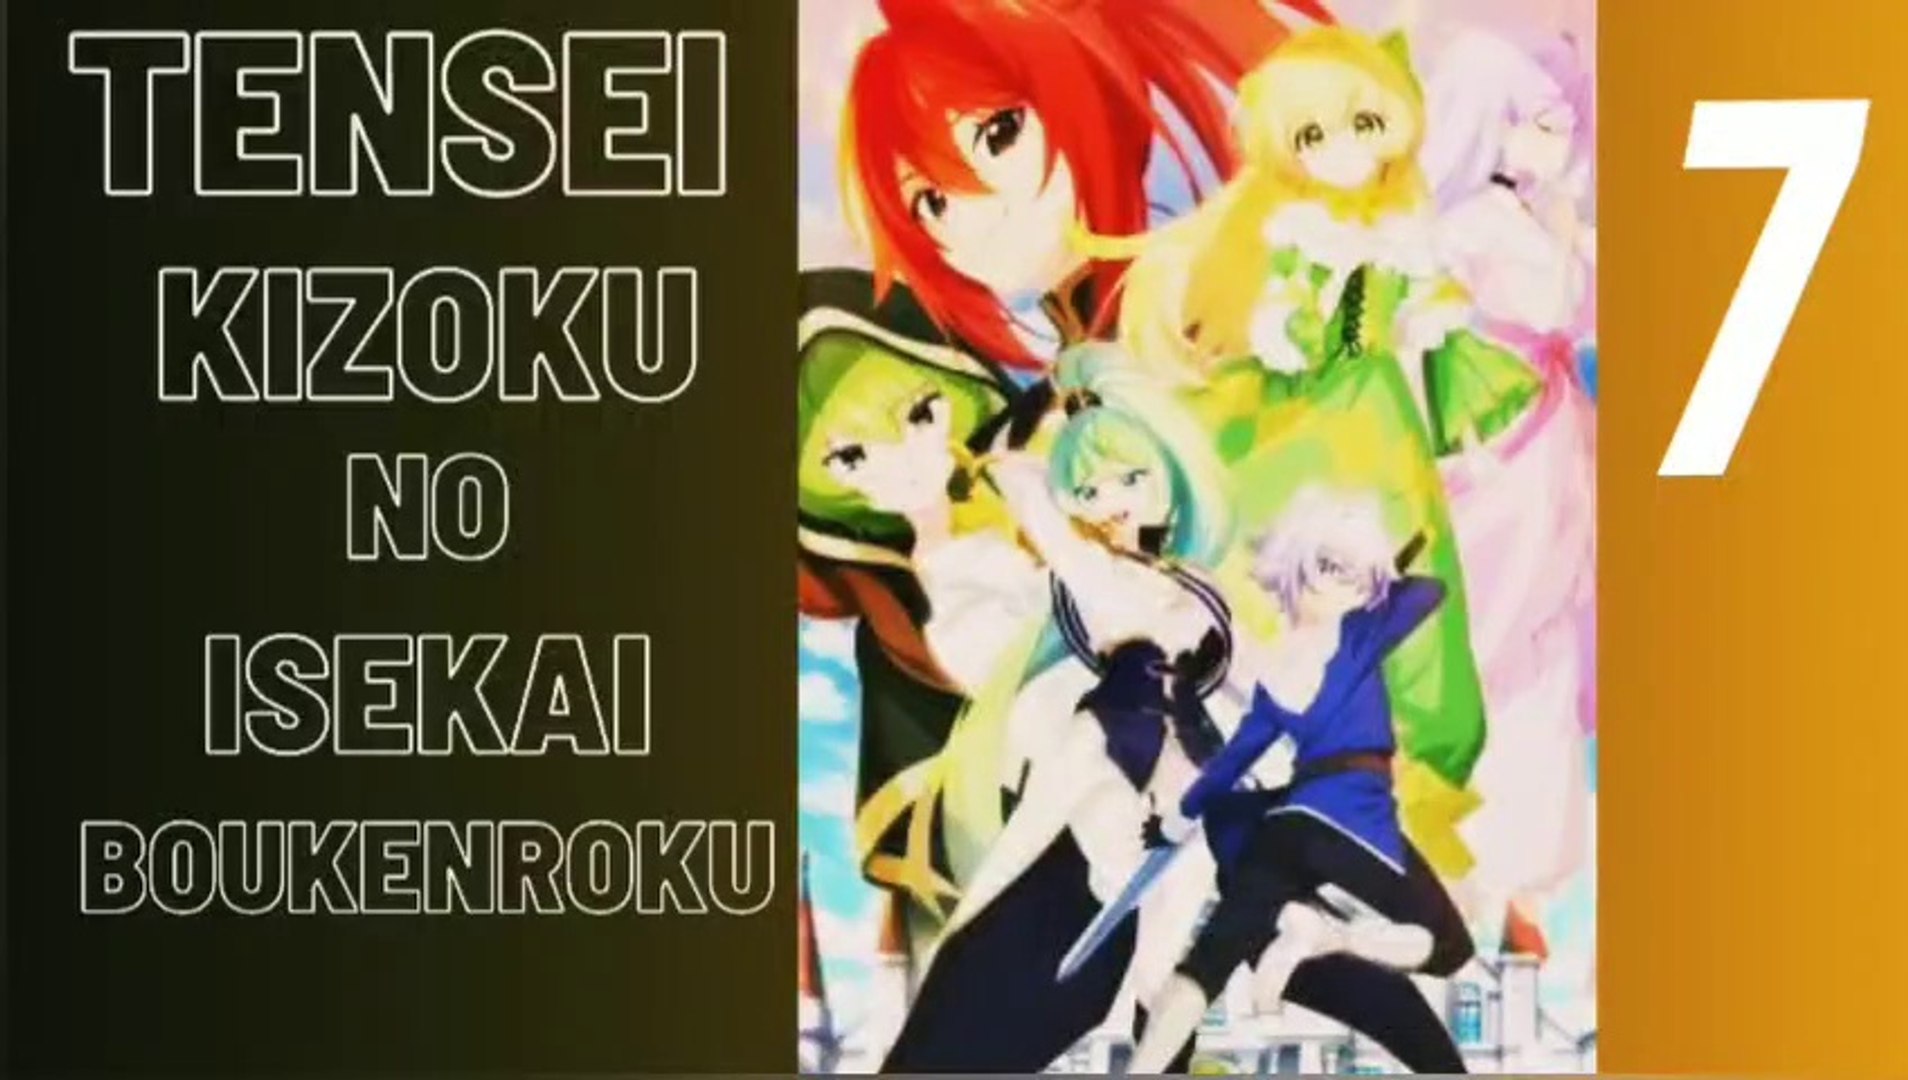 Tensei Kizoku no Isekai (Chronicles of an Aristocrat Reborn in